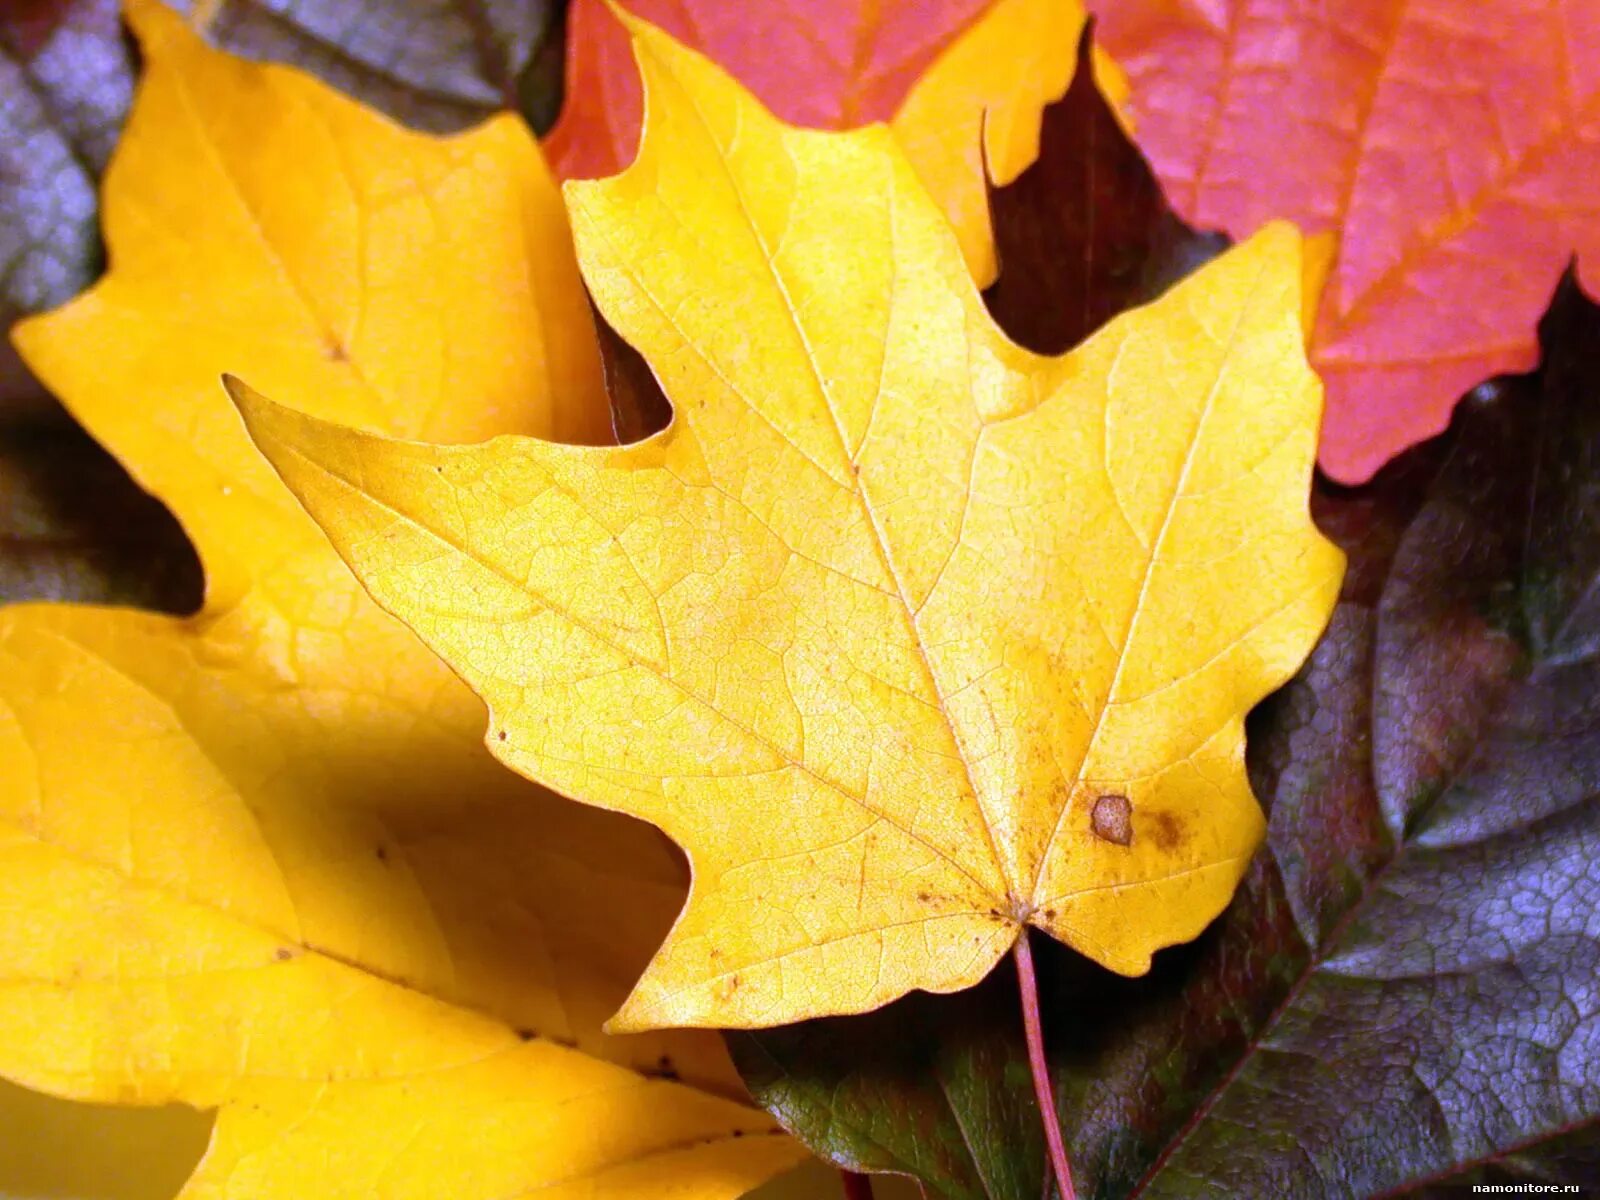 Листья желтые по краям. Желтый лист. Осенние листья. Желтый лист клена. Жёлтый лист осенний.